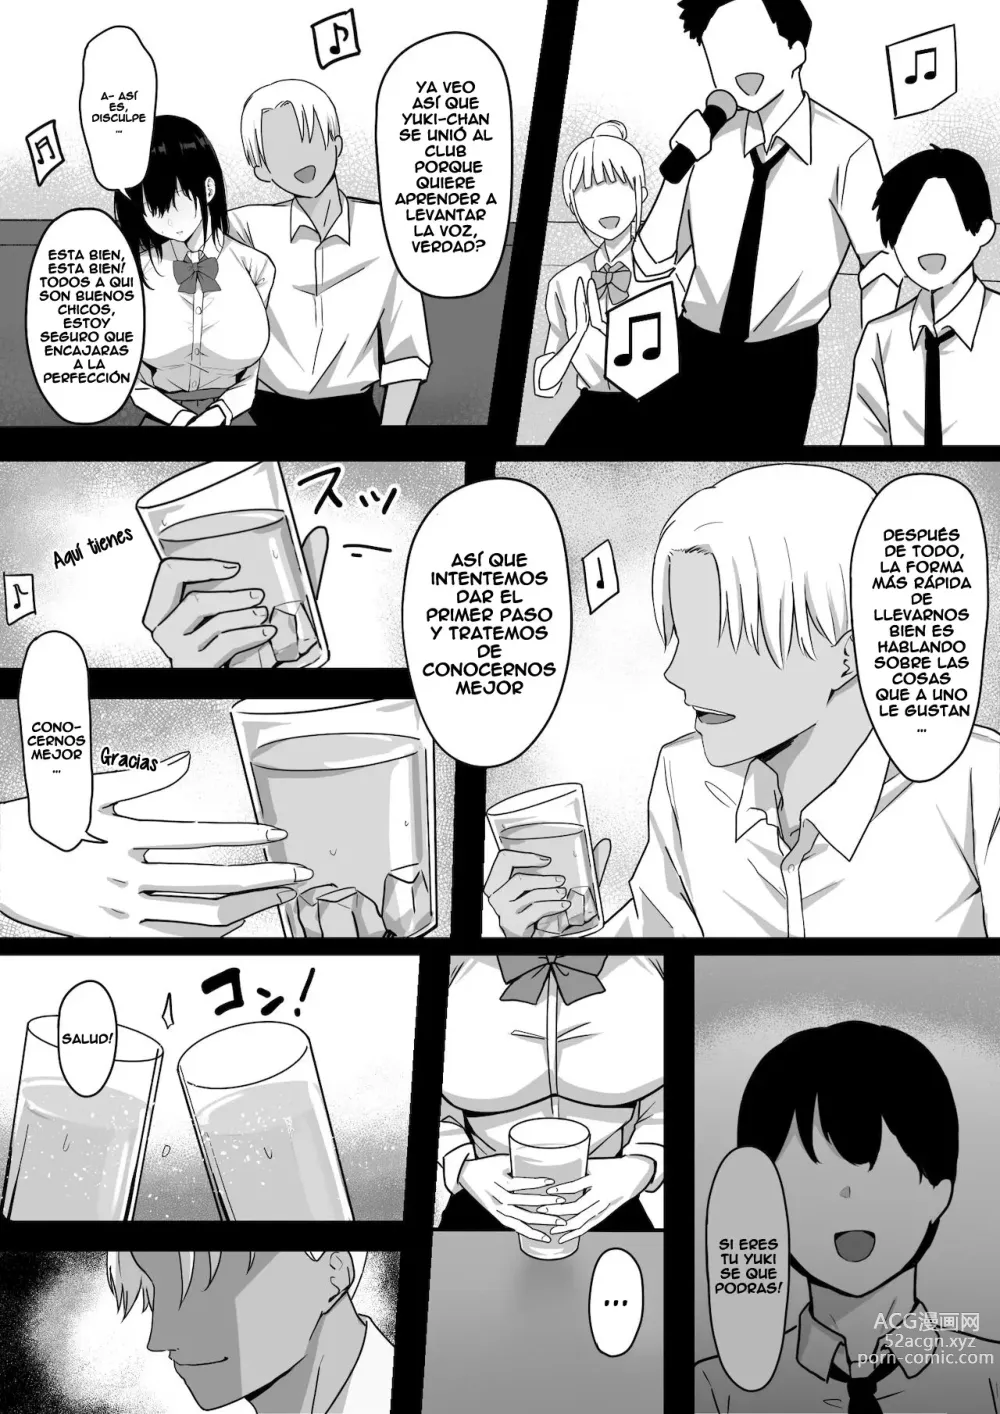 Page 6 of doujinshi Mi unica amiga de la infancia que es muy timida me fue robada!